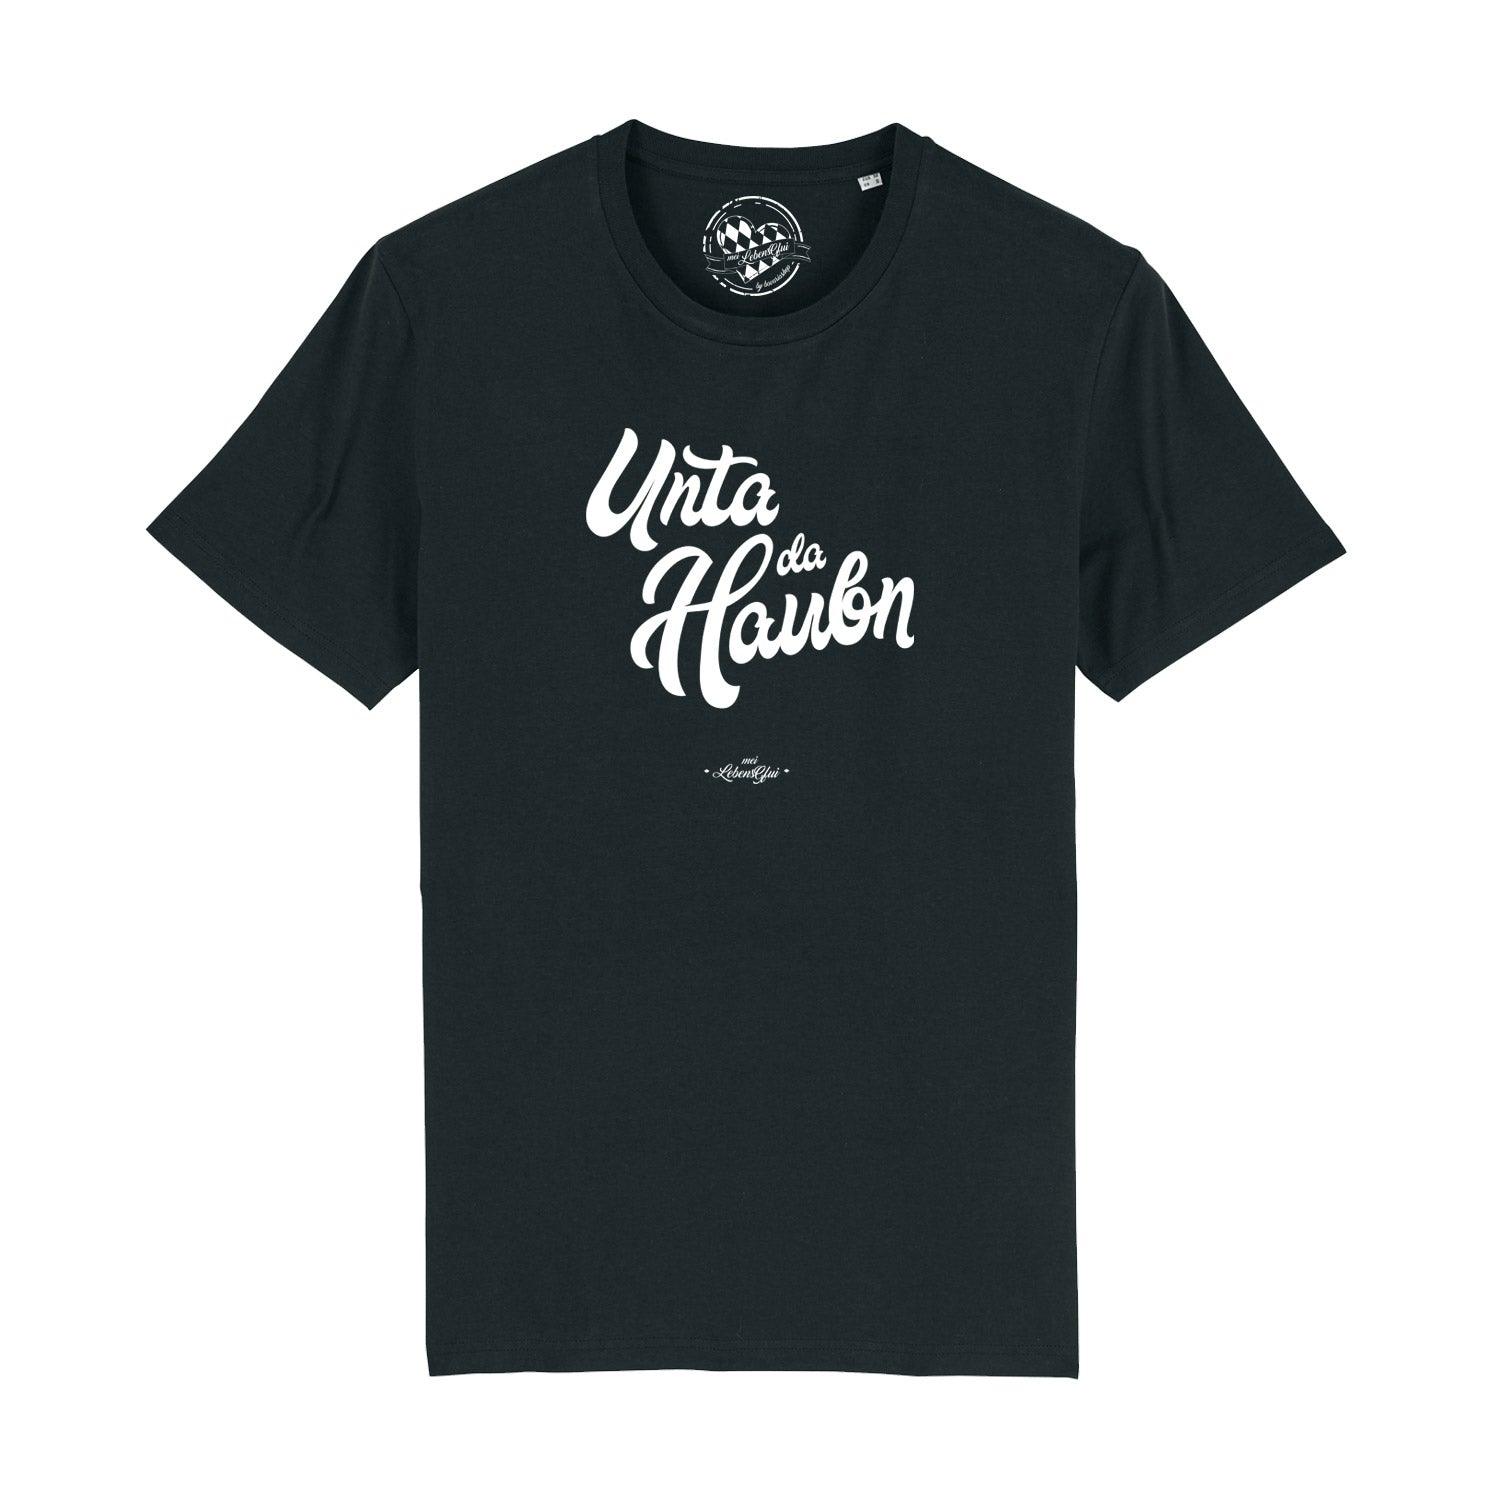 Herren T-Shirt "Unta da Haubn" - bavariashop - mei LebensGfui